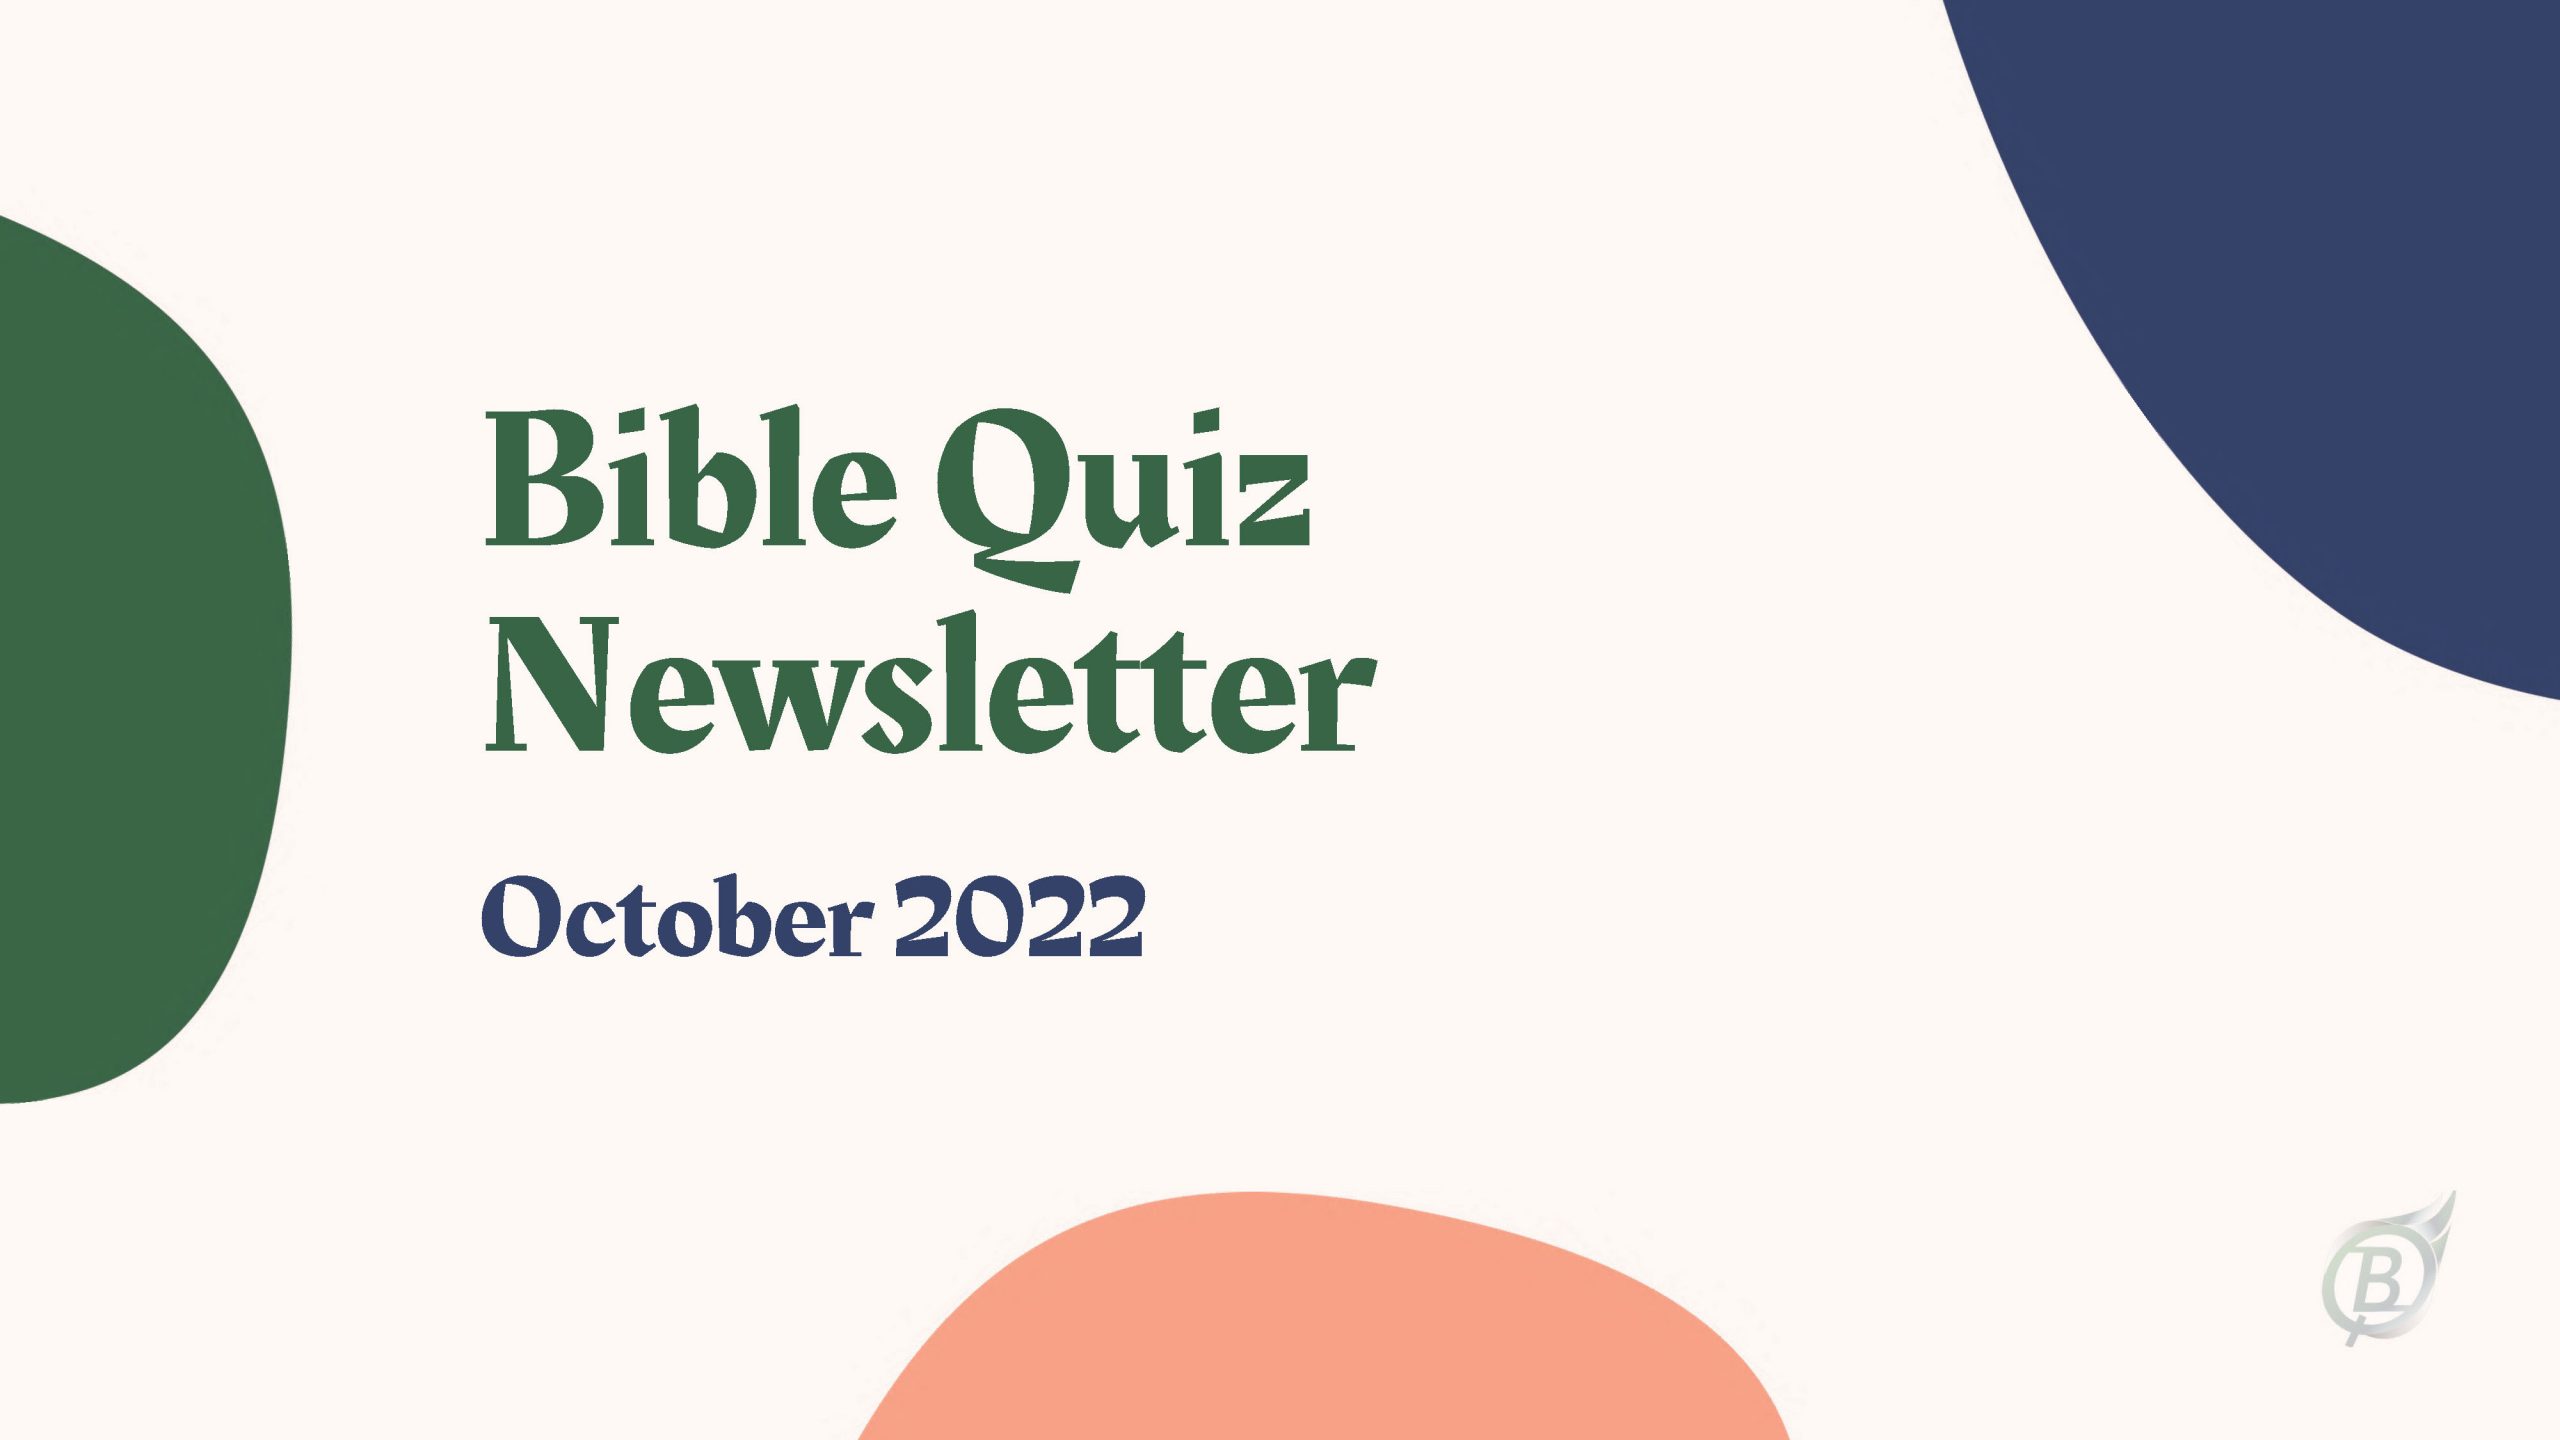 Bible Quiz Newsletter - October 2022